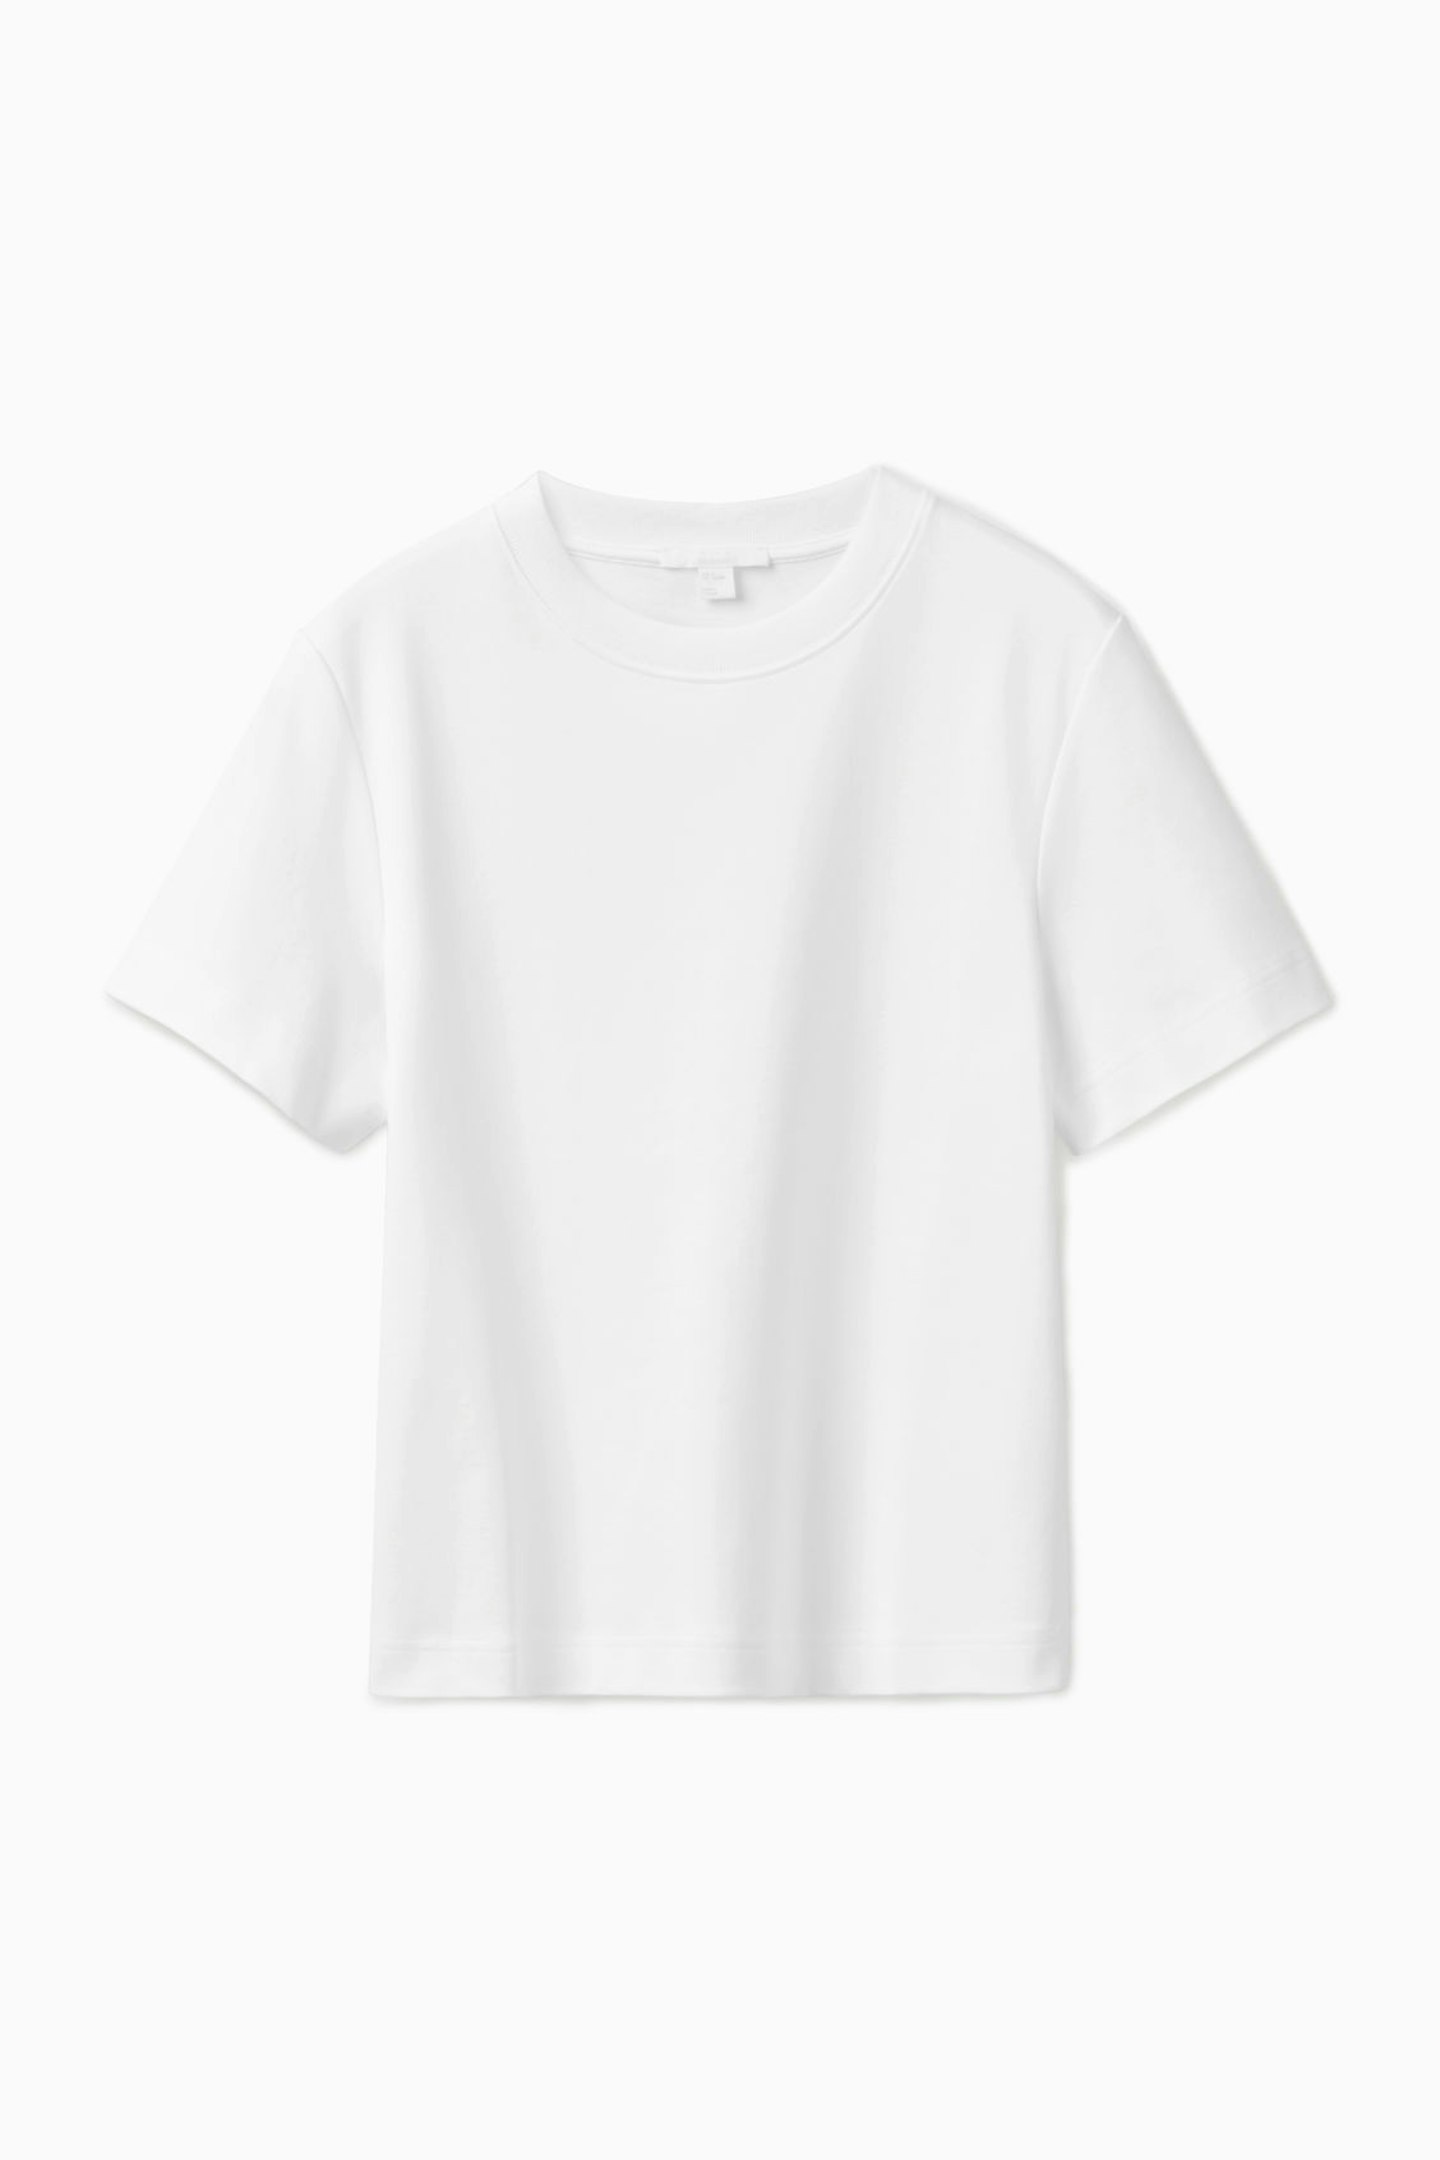 COS, Clean Cut White T-Shirt